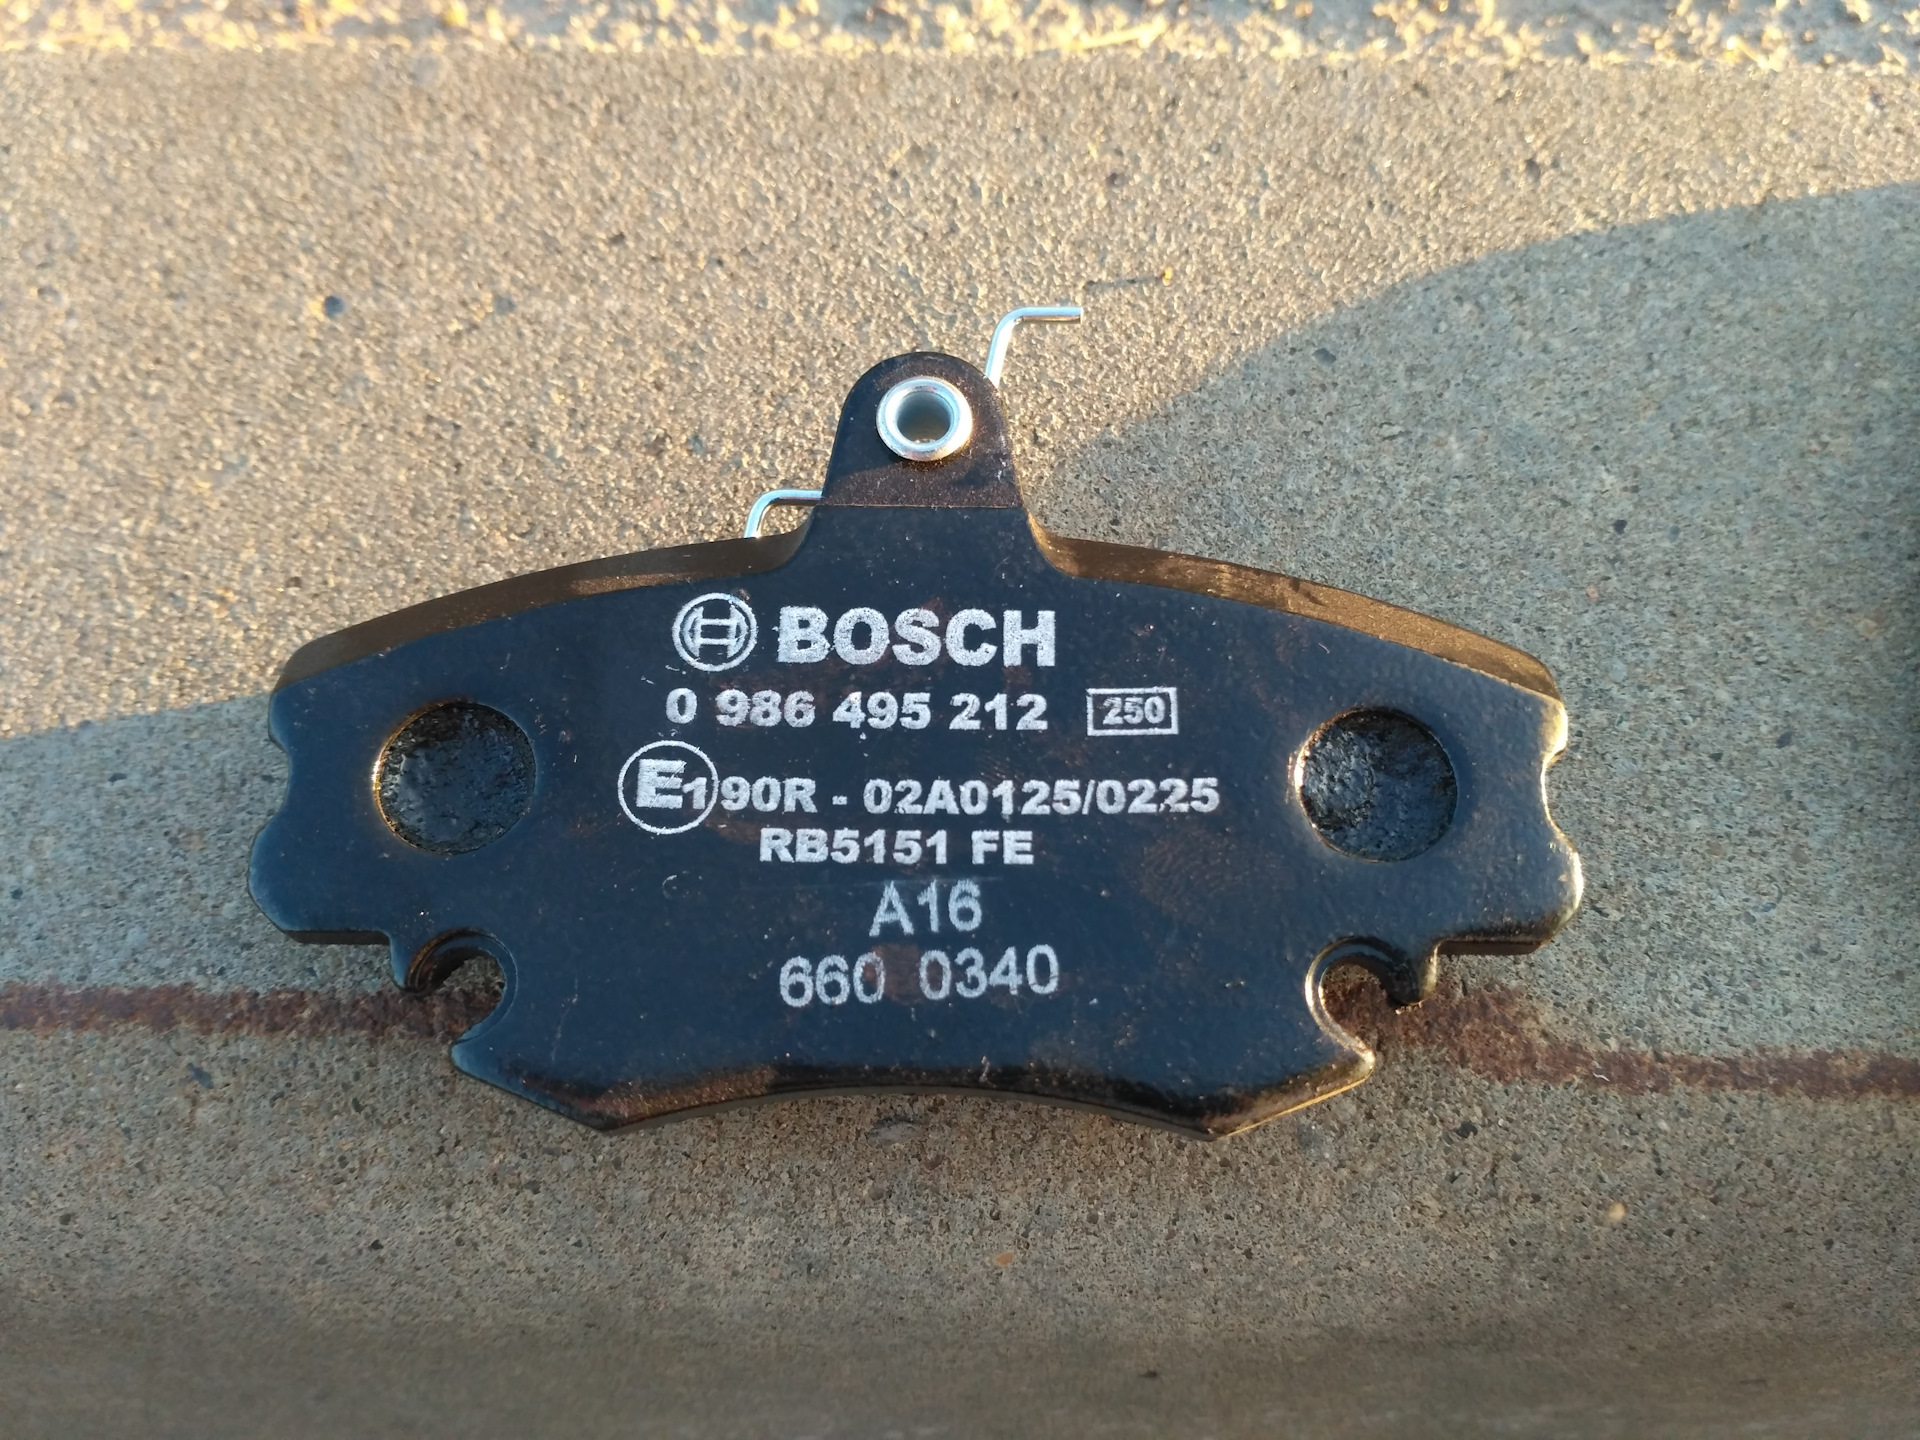 1 495 2 3. Bosch0 986 495 089. Bosch 0 986 495 244. Bosch 0986495212. Bosch 0 986 495 215.